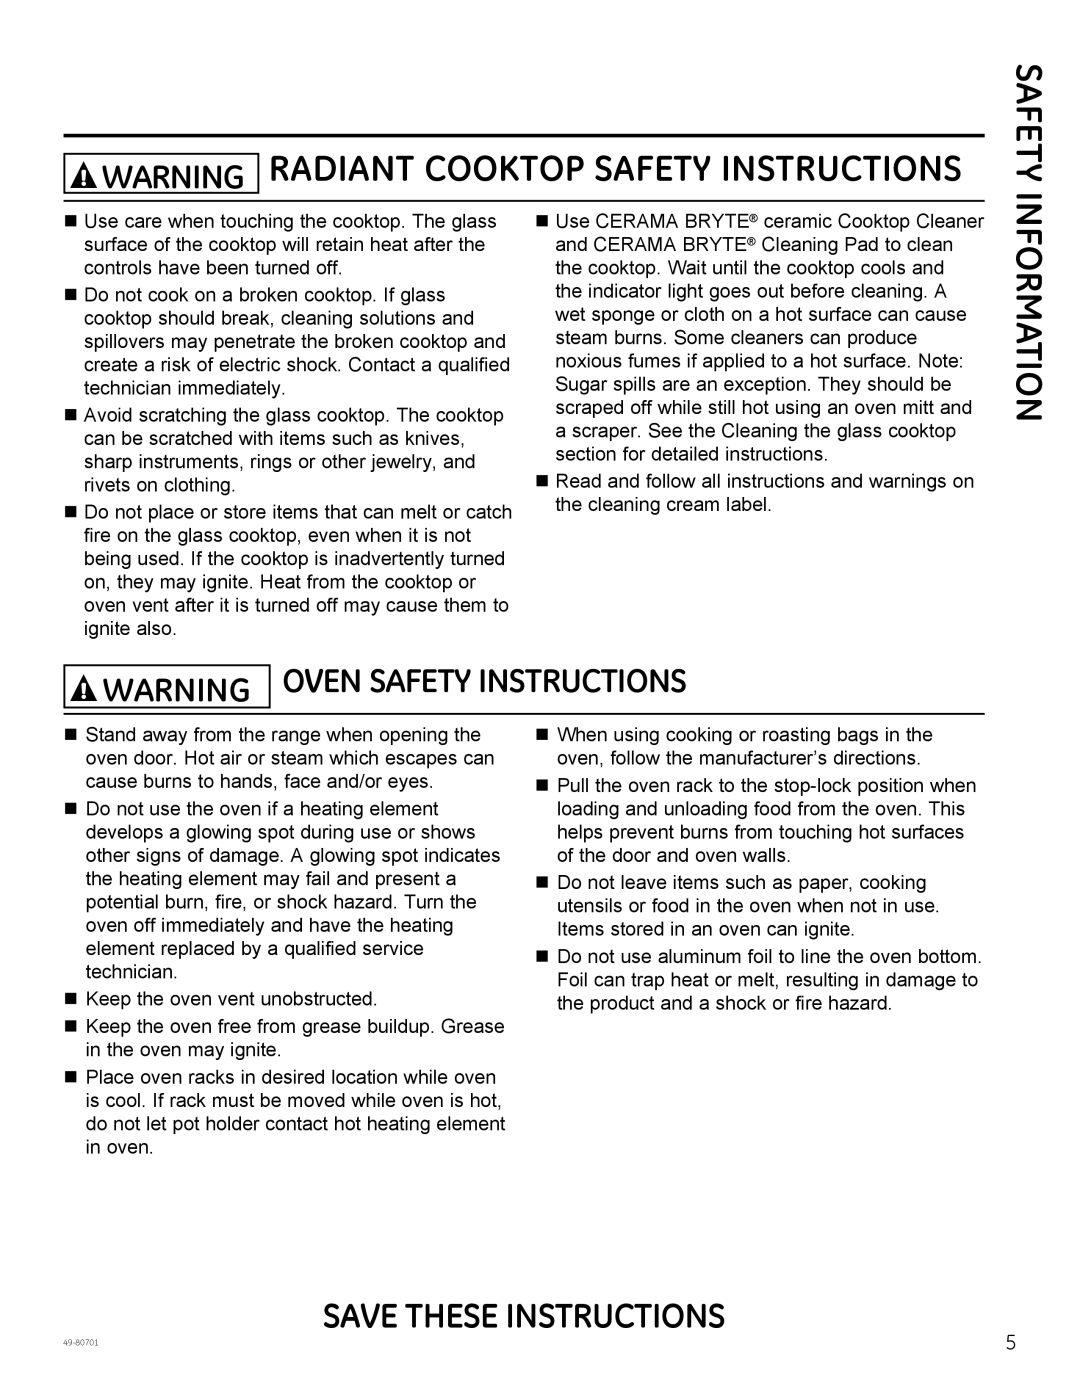 GE PB950, JB850, JB870 Warning Radiant Cooktop Safety Instructions, Warning Oven Safety Instructions, Information 